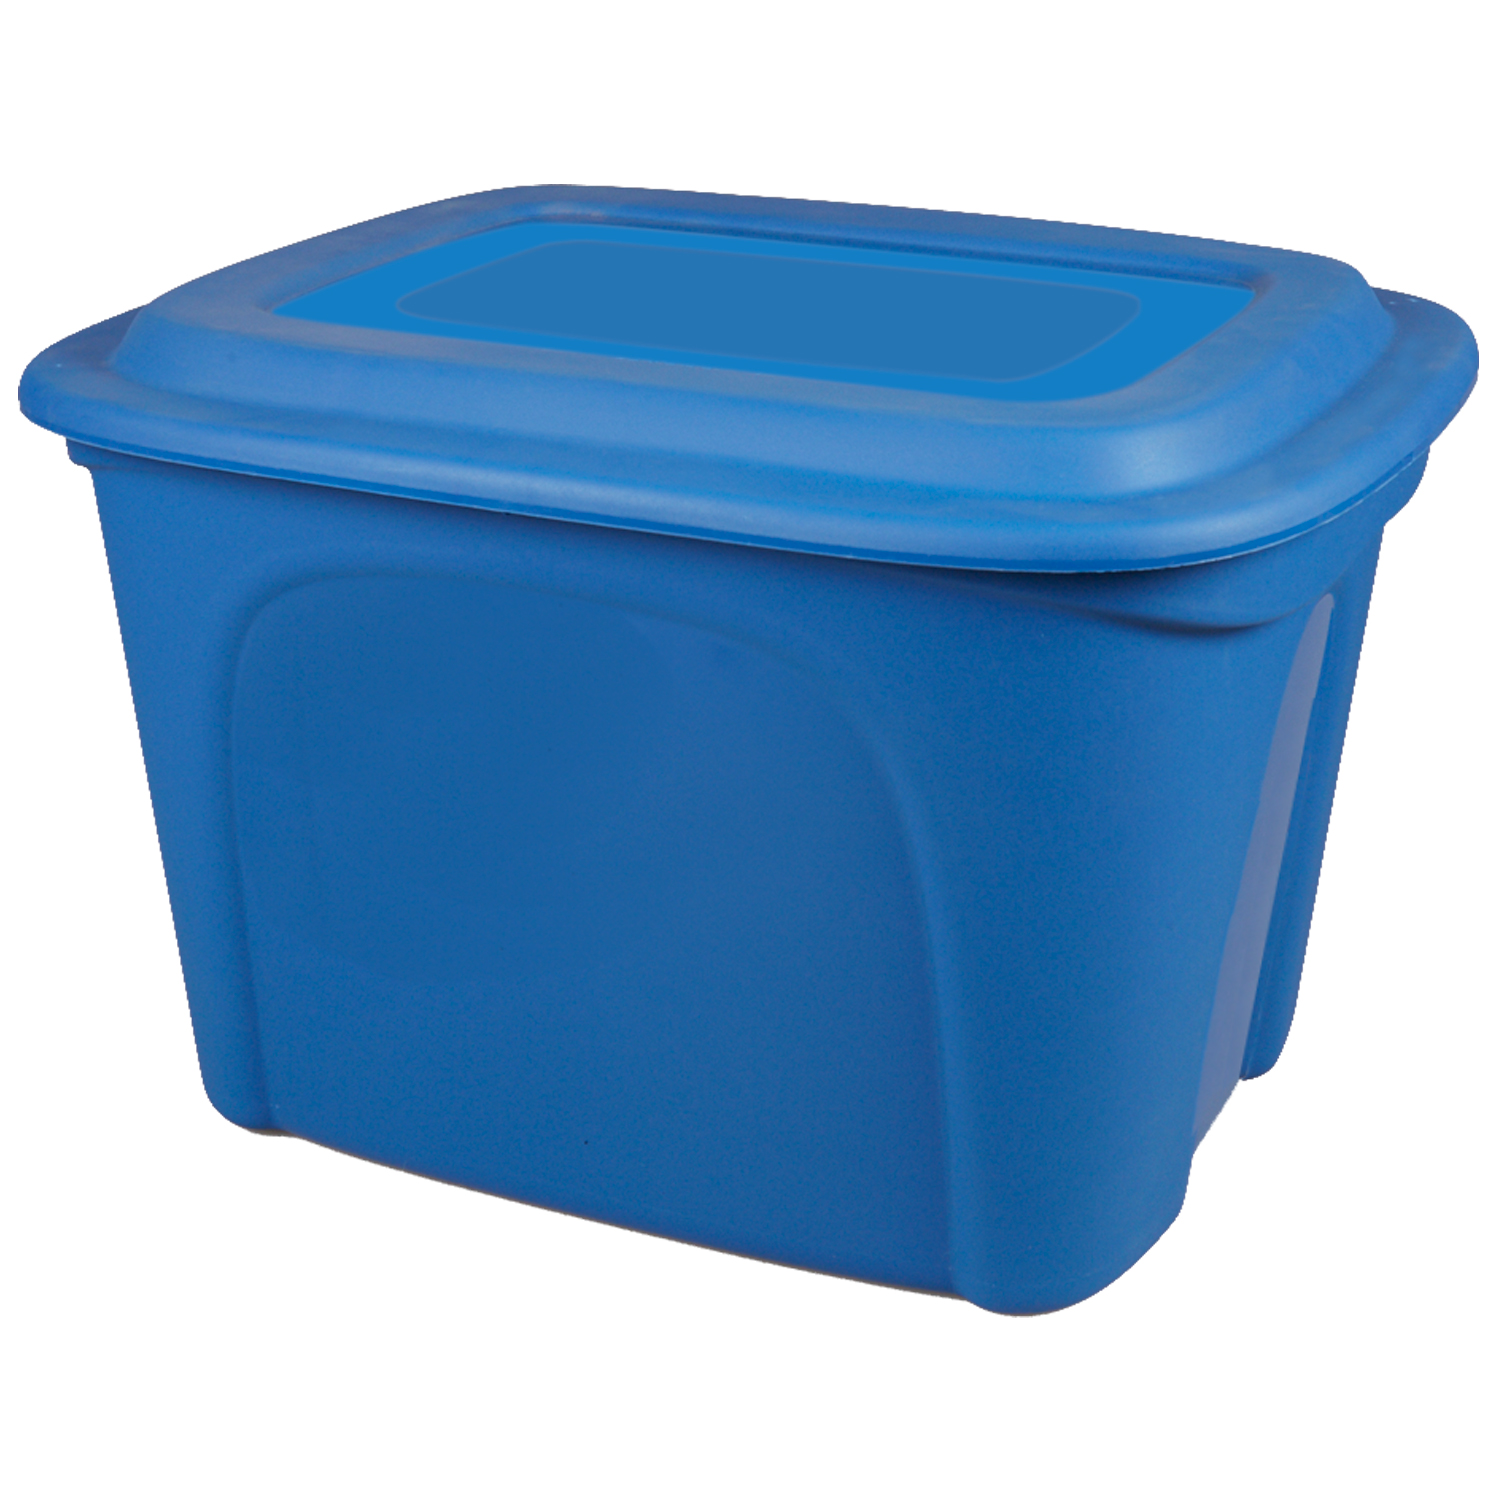 Bac de rangement bleu en plastique - 72L. Colour: blue, Fr